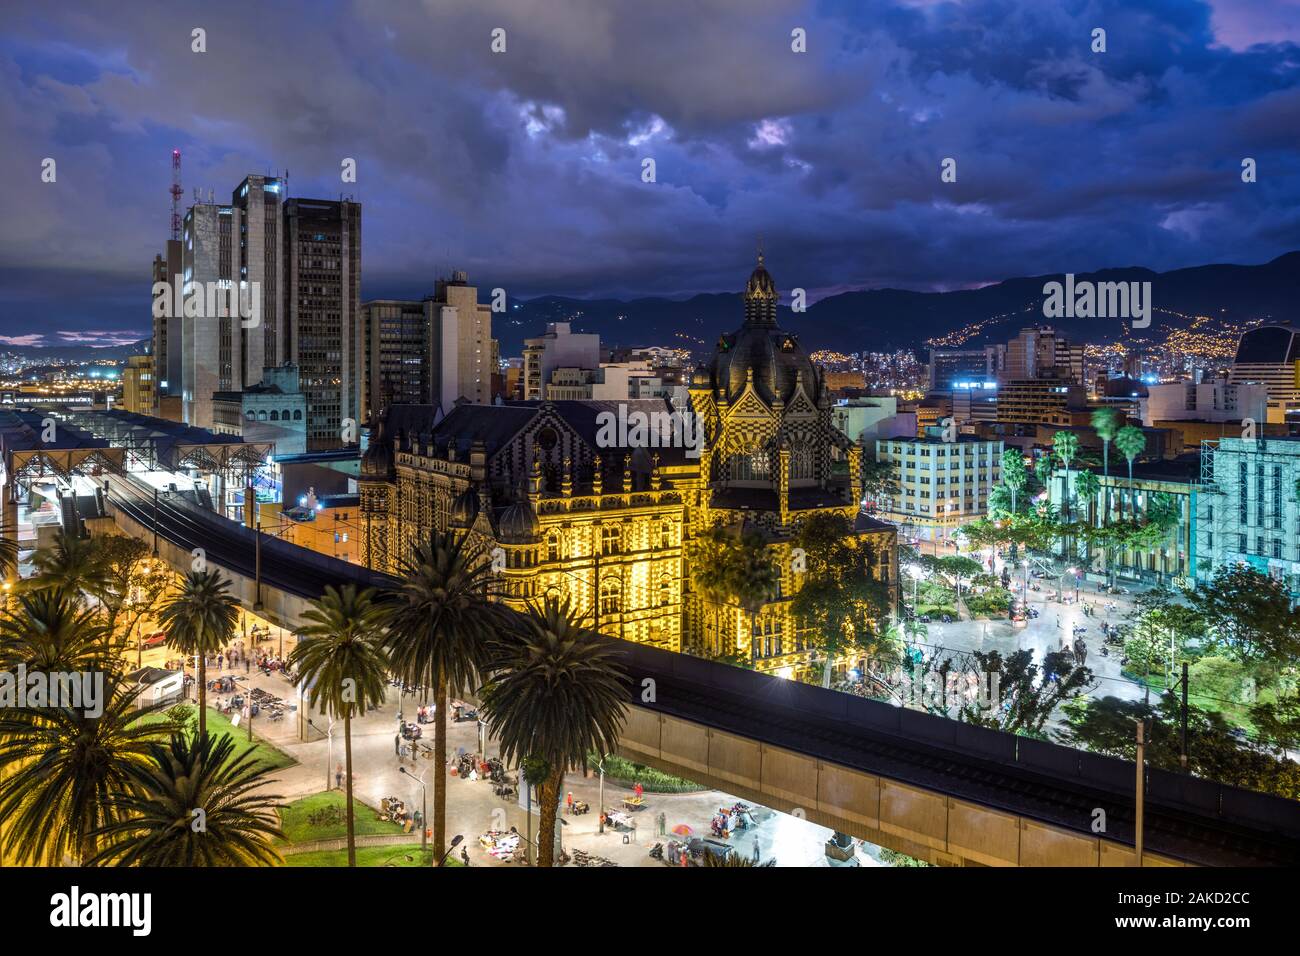 Plaza Botero square at dusk in Medellin, Colombia. Stock Photo